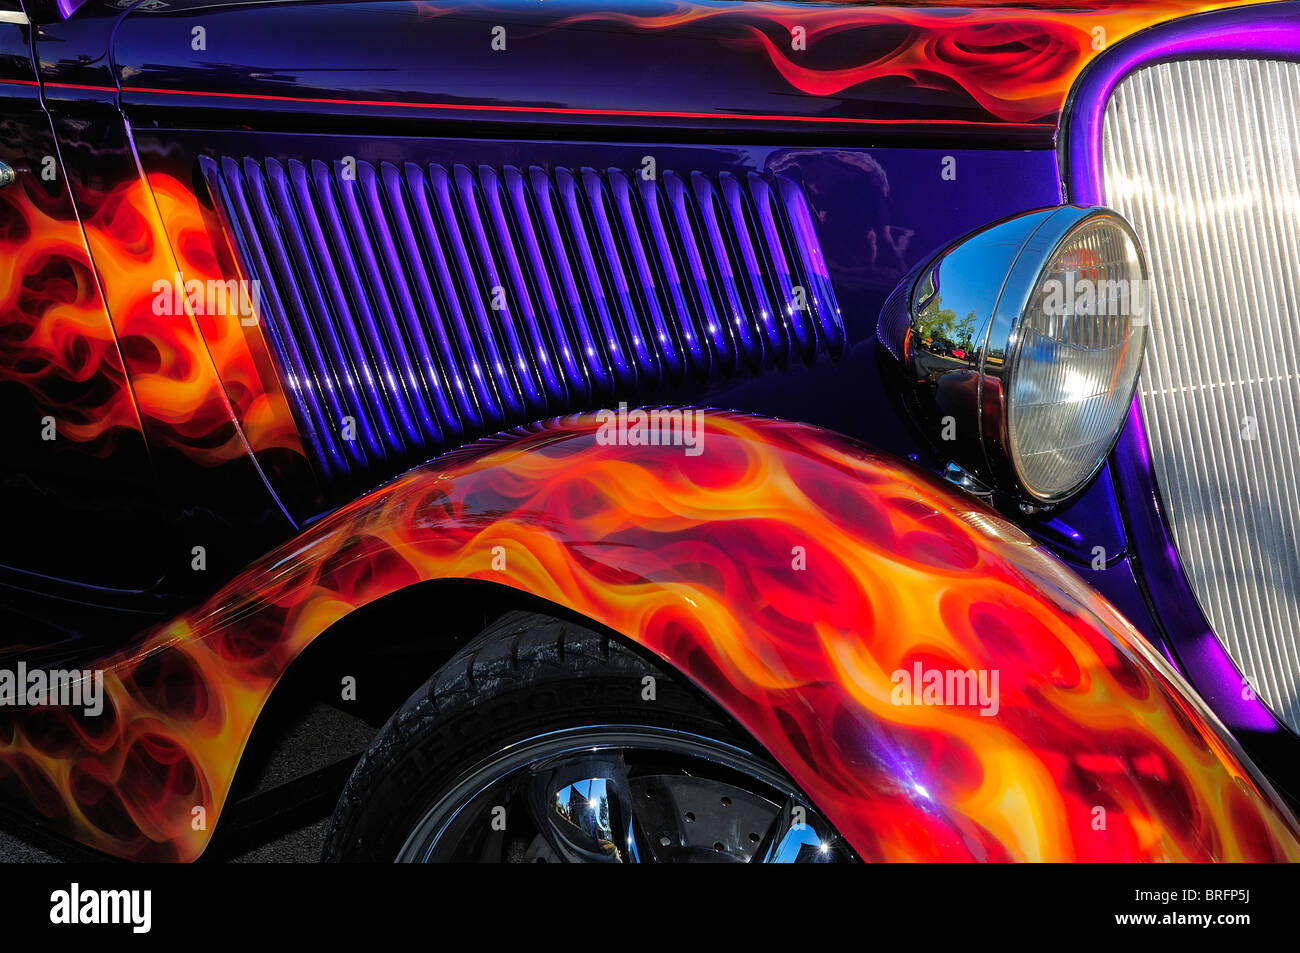 Résumé détaillé de l'American hot rod dans une petite ville car show 'Nuits de Croisière' dans Barrington, Illinois, USA. Banque D'Images